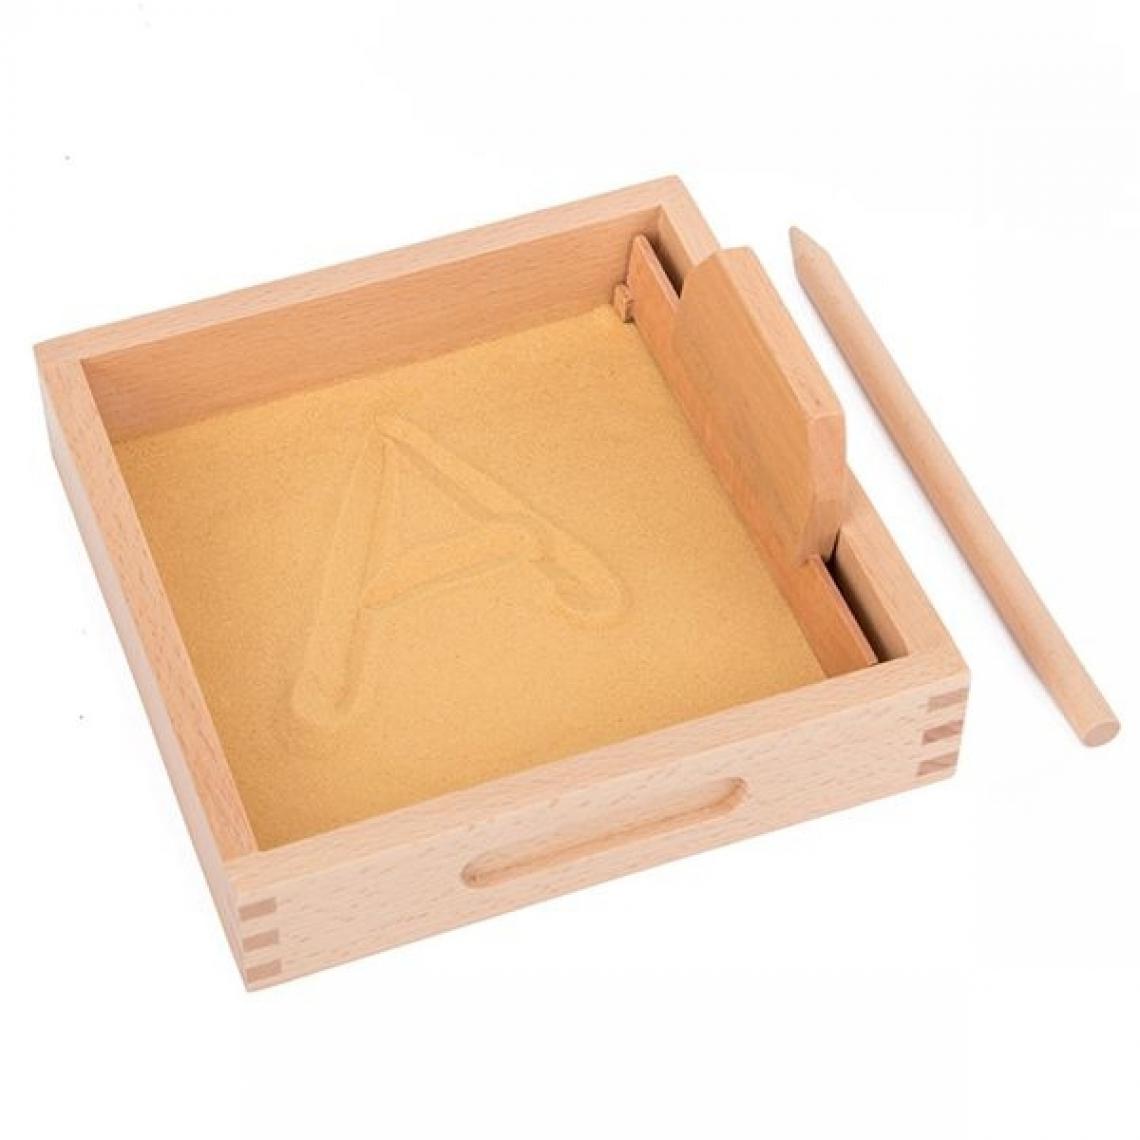 Totalcadeau - Bac à sable avec crayon et raclette Montessori apprendre écriture - Jeux d'adresse